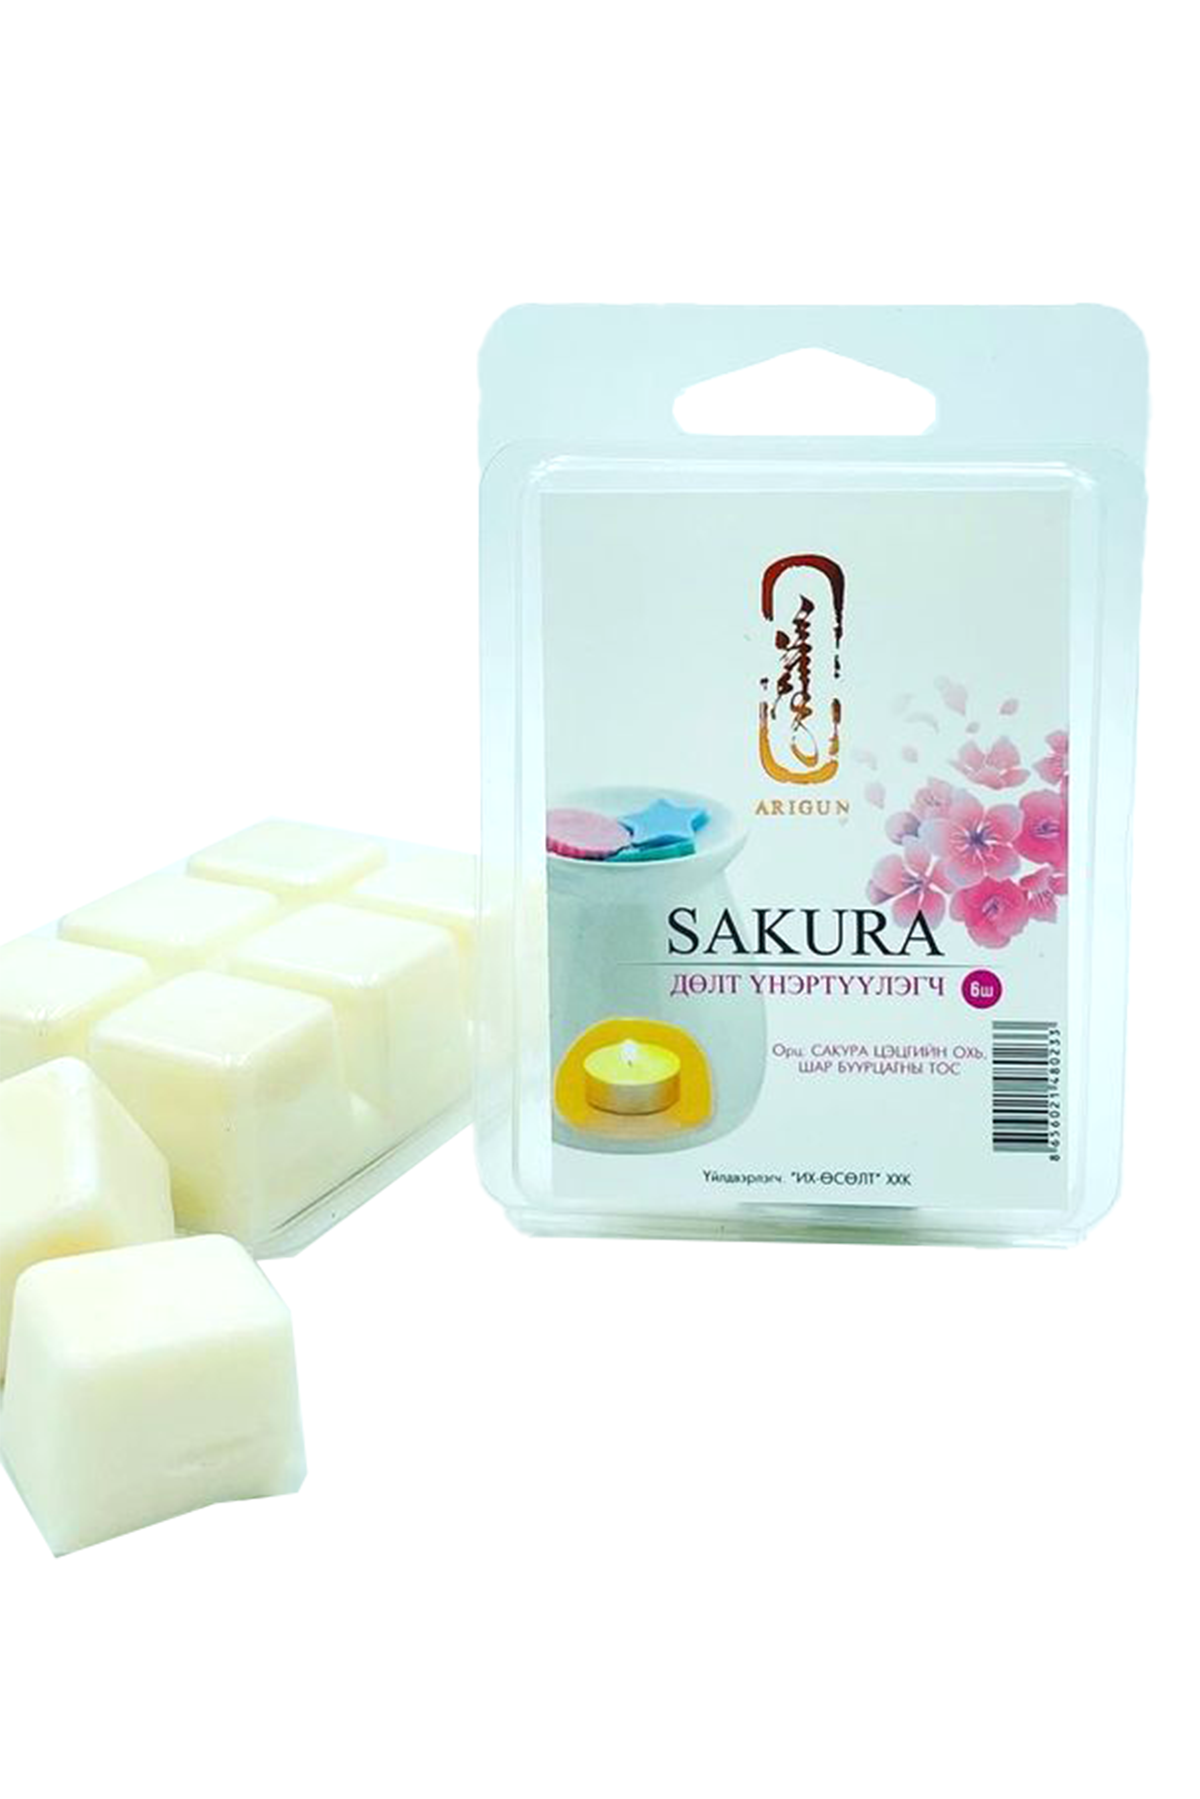 Soy wax, handmade sakura wax melts